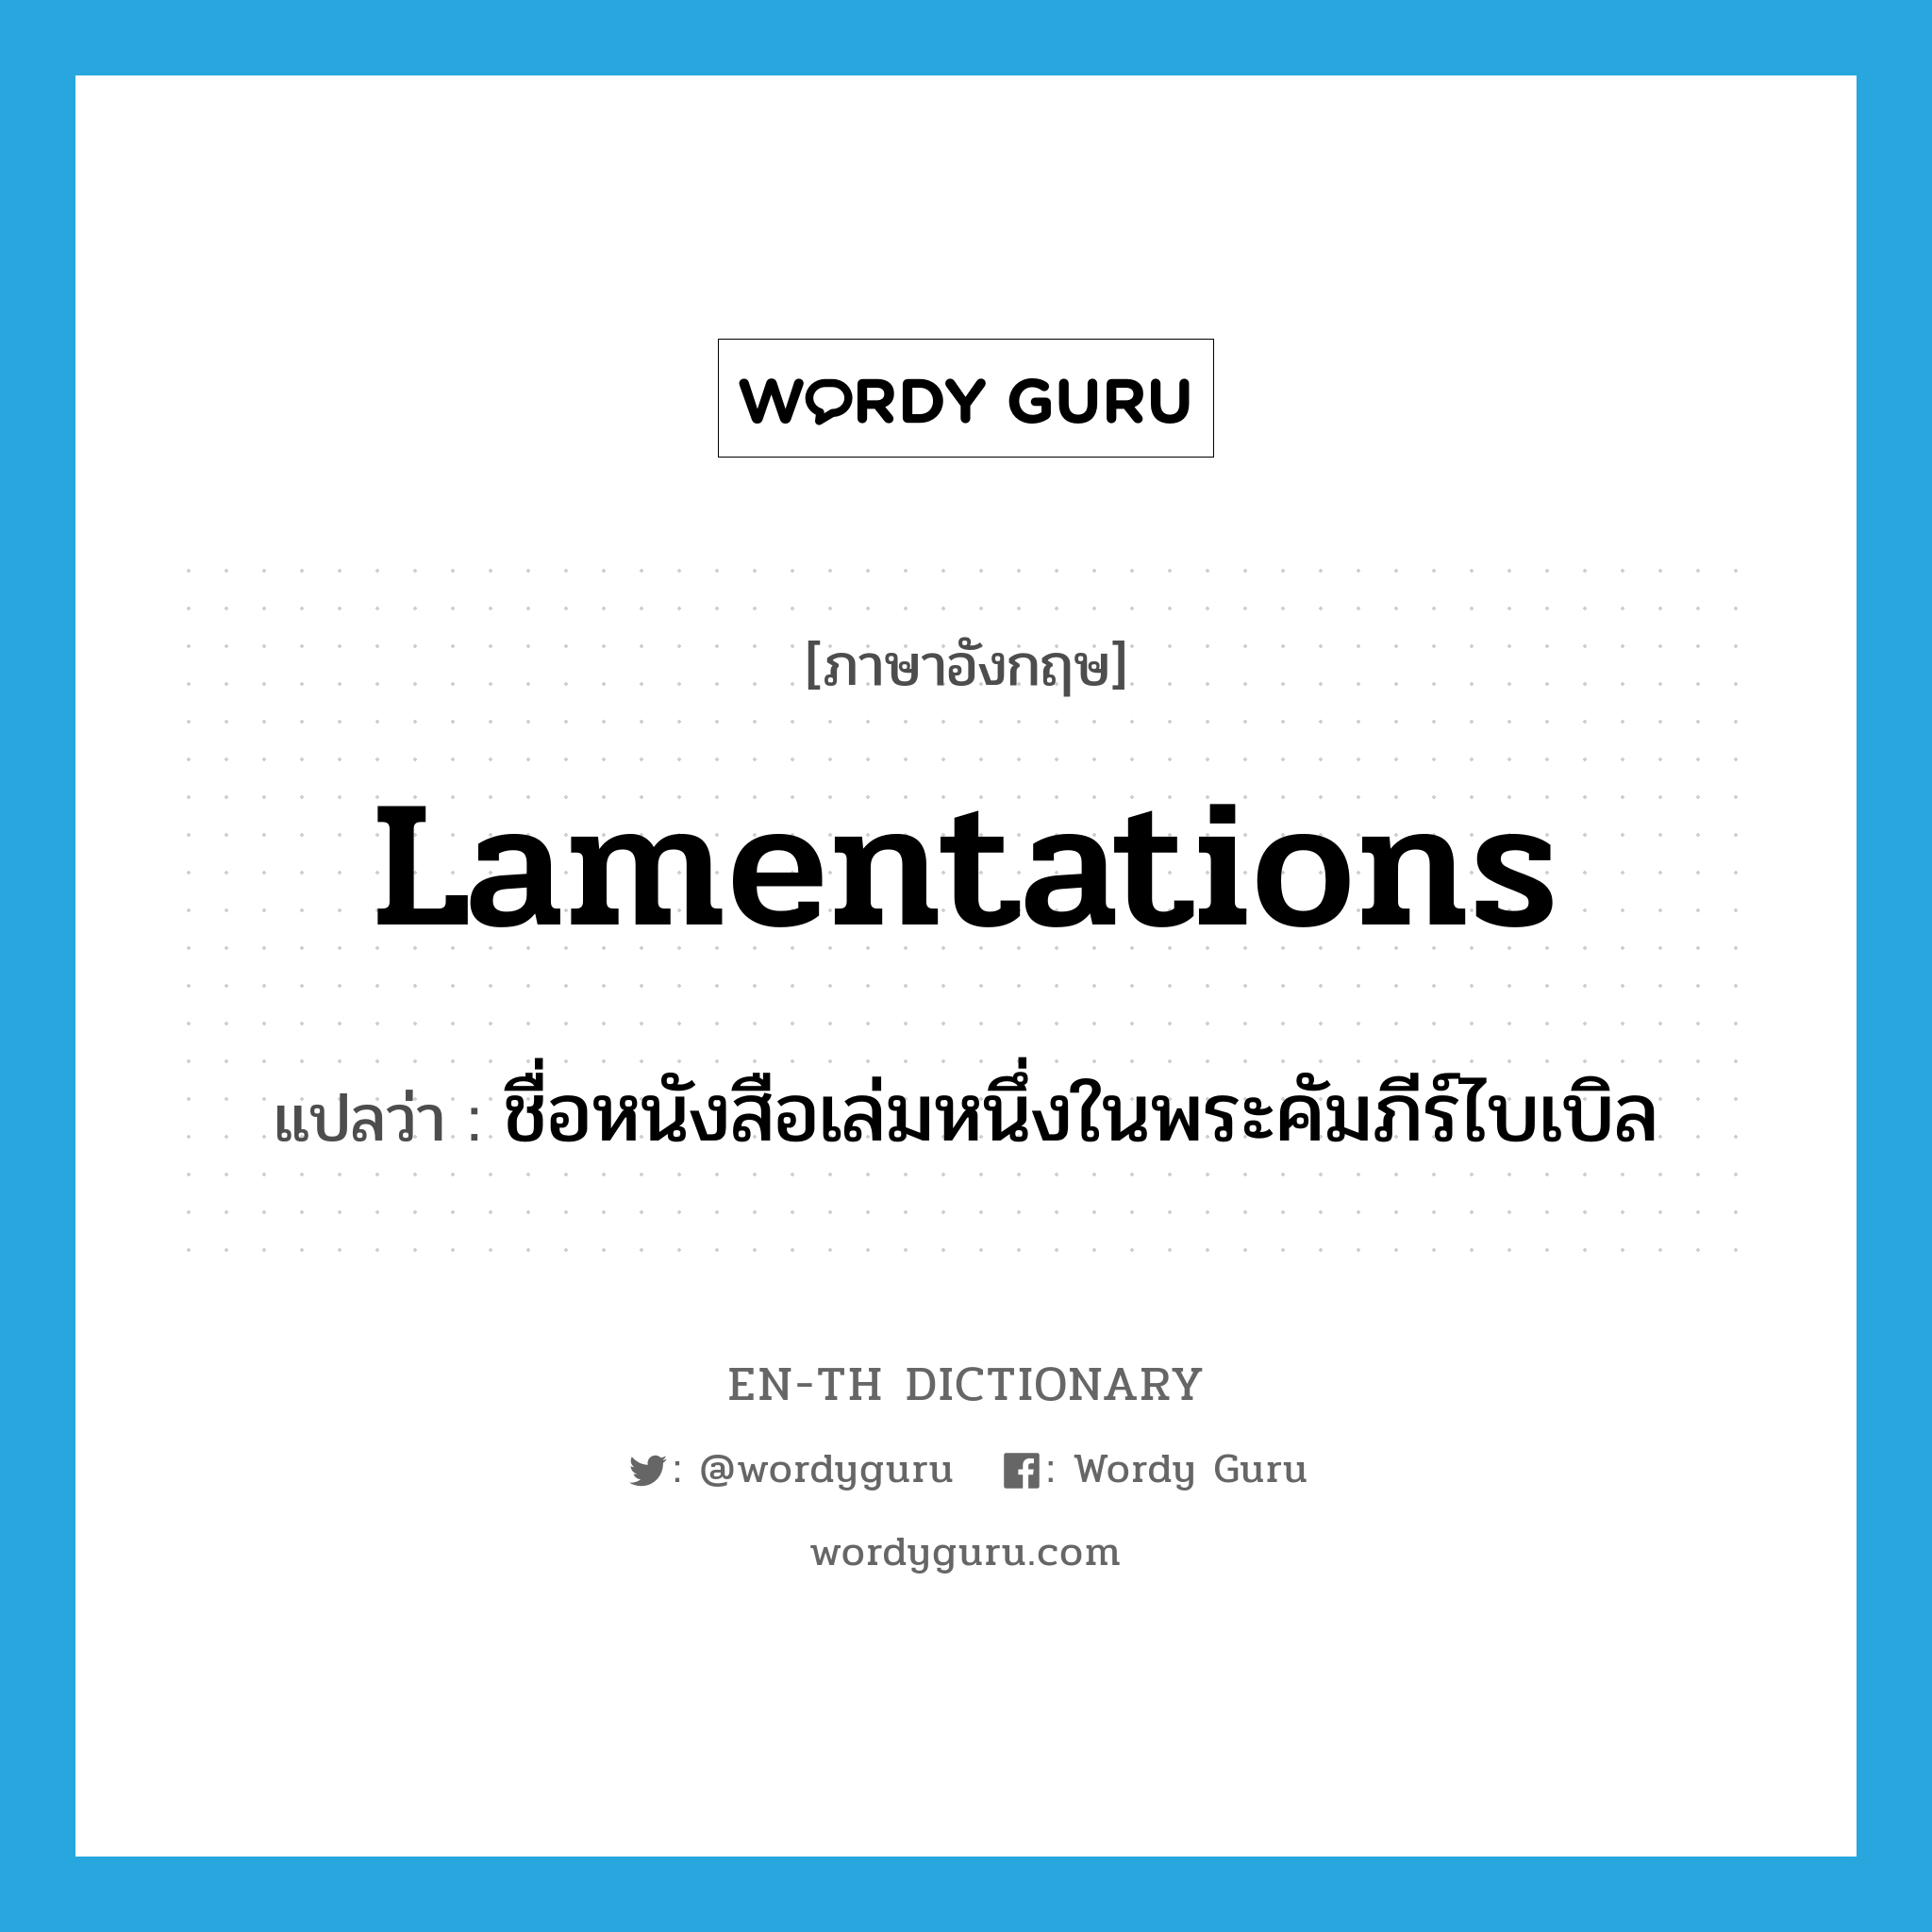 Lamentations แปลว่า?, คำศัพท์ภาษาอังกฤษ Lamentations แปลว่า ชื่อหนังสือเล่มหนึ่งในพระคัมภีร์ไบเบิล ประเภท N หมวด N